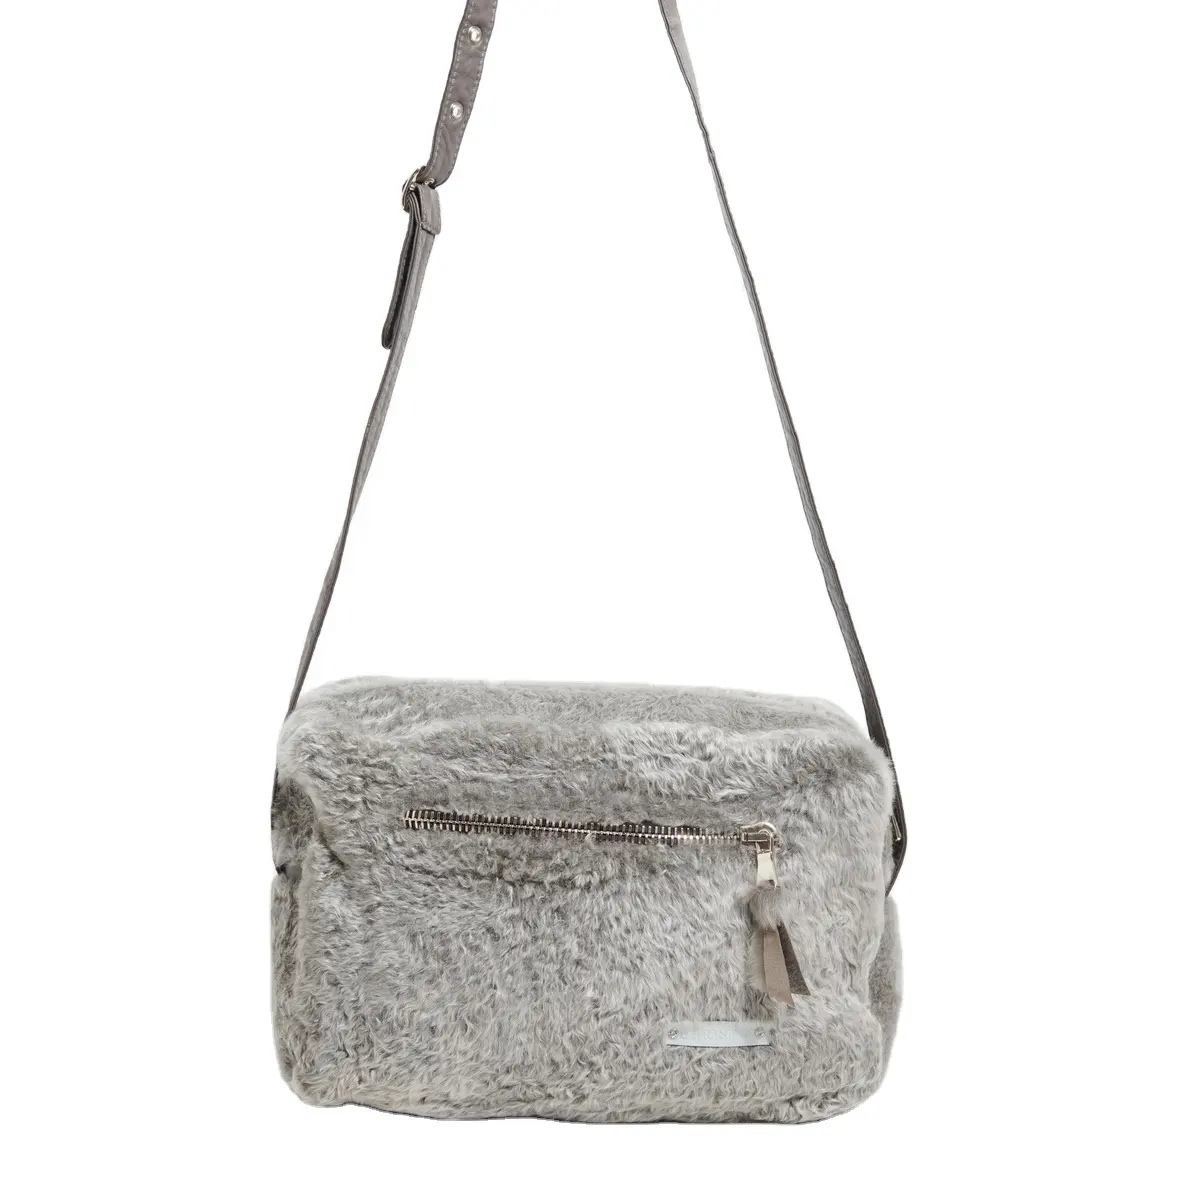 Hochwertige italienische hand gefertigte graue Shear ling Messenger Bag mit Schulter streifen für den Export